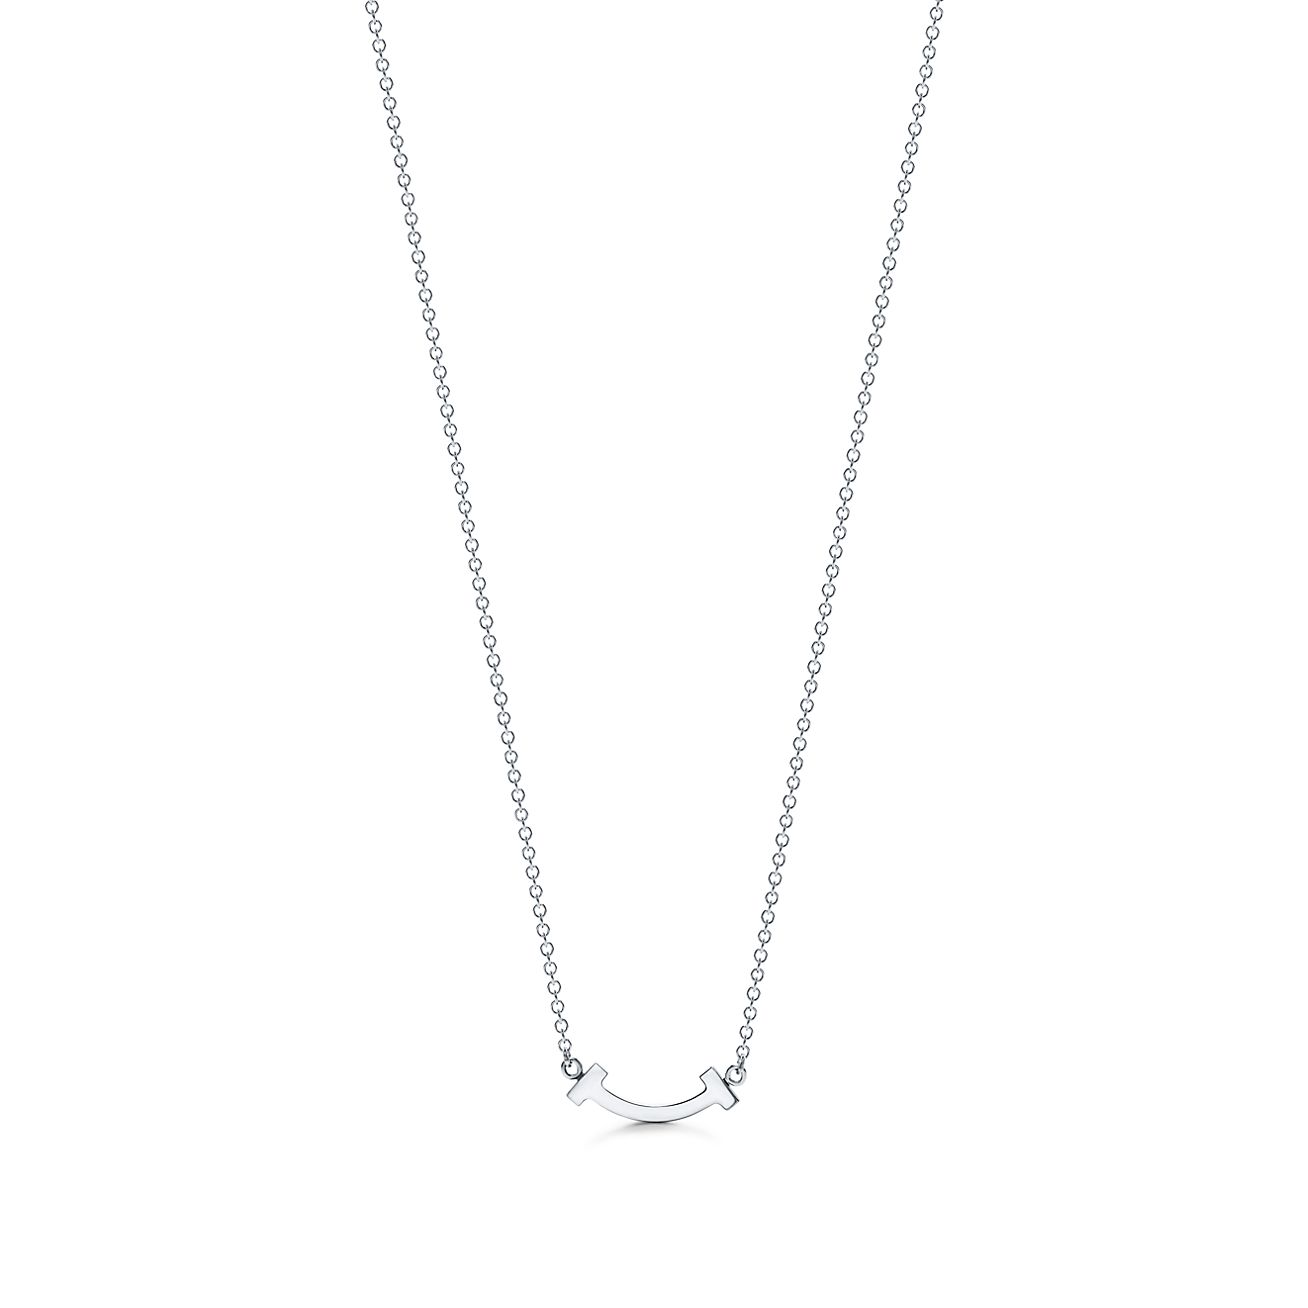 ティファニー T スマイル ペンダント ミニ ダイヤモンド 18k ホワイトゴールド Tiffany Co